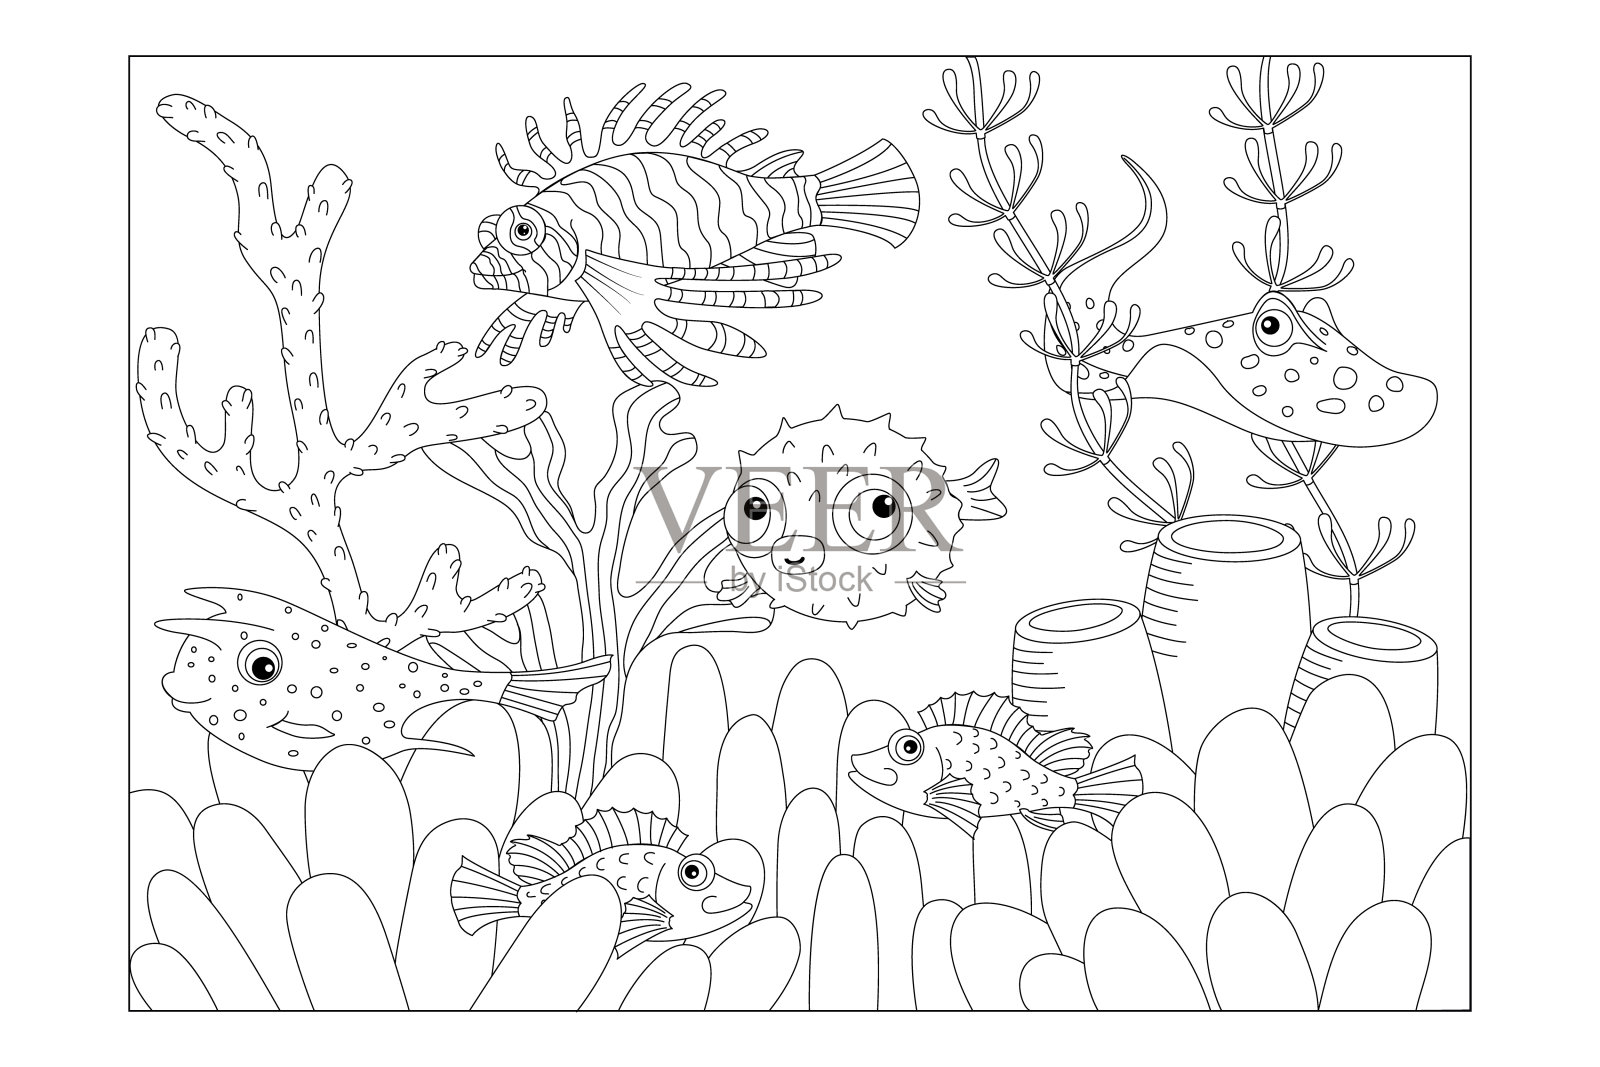 毒鱼:箱鲀，狮子鱼，黄貂鱼，河豚鱼，海鲈鱼。孩子的照片着色。向量插画图片素材